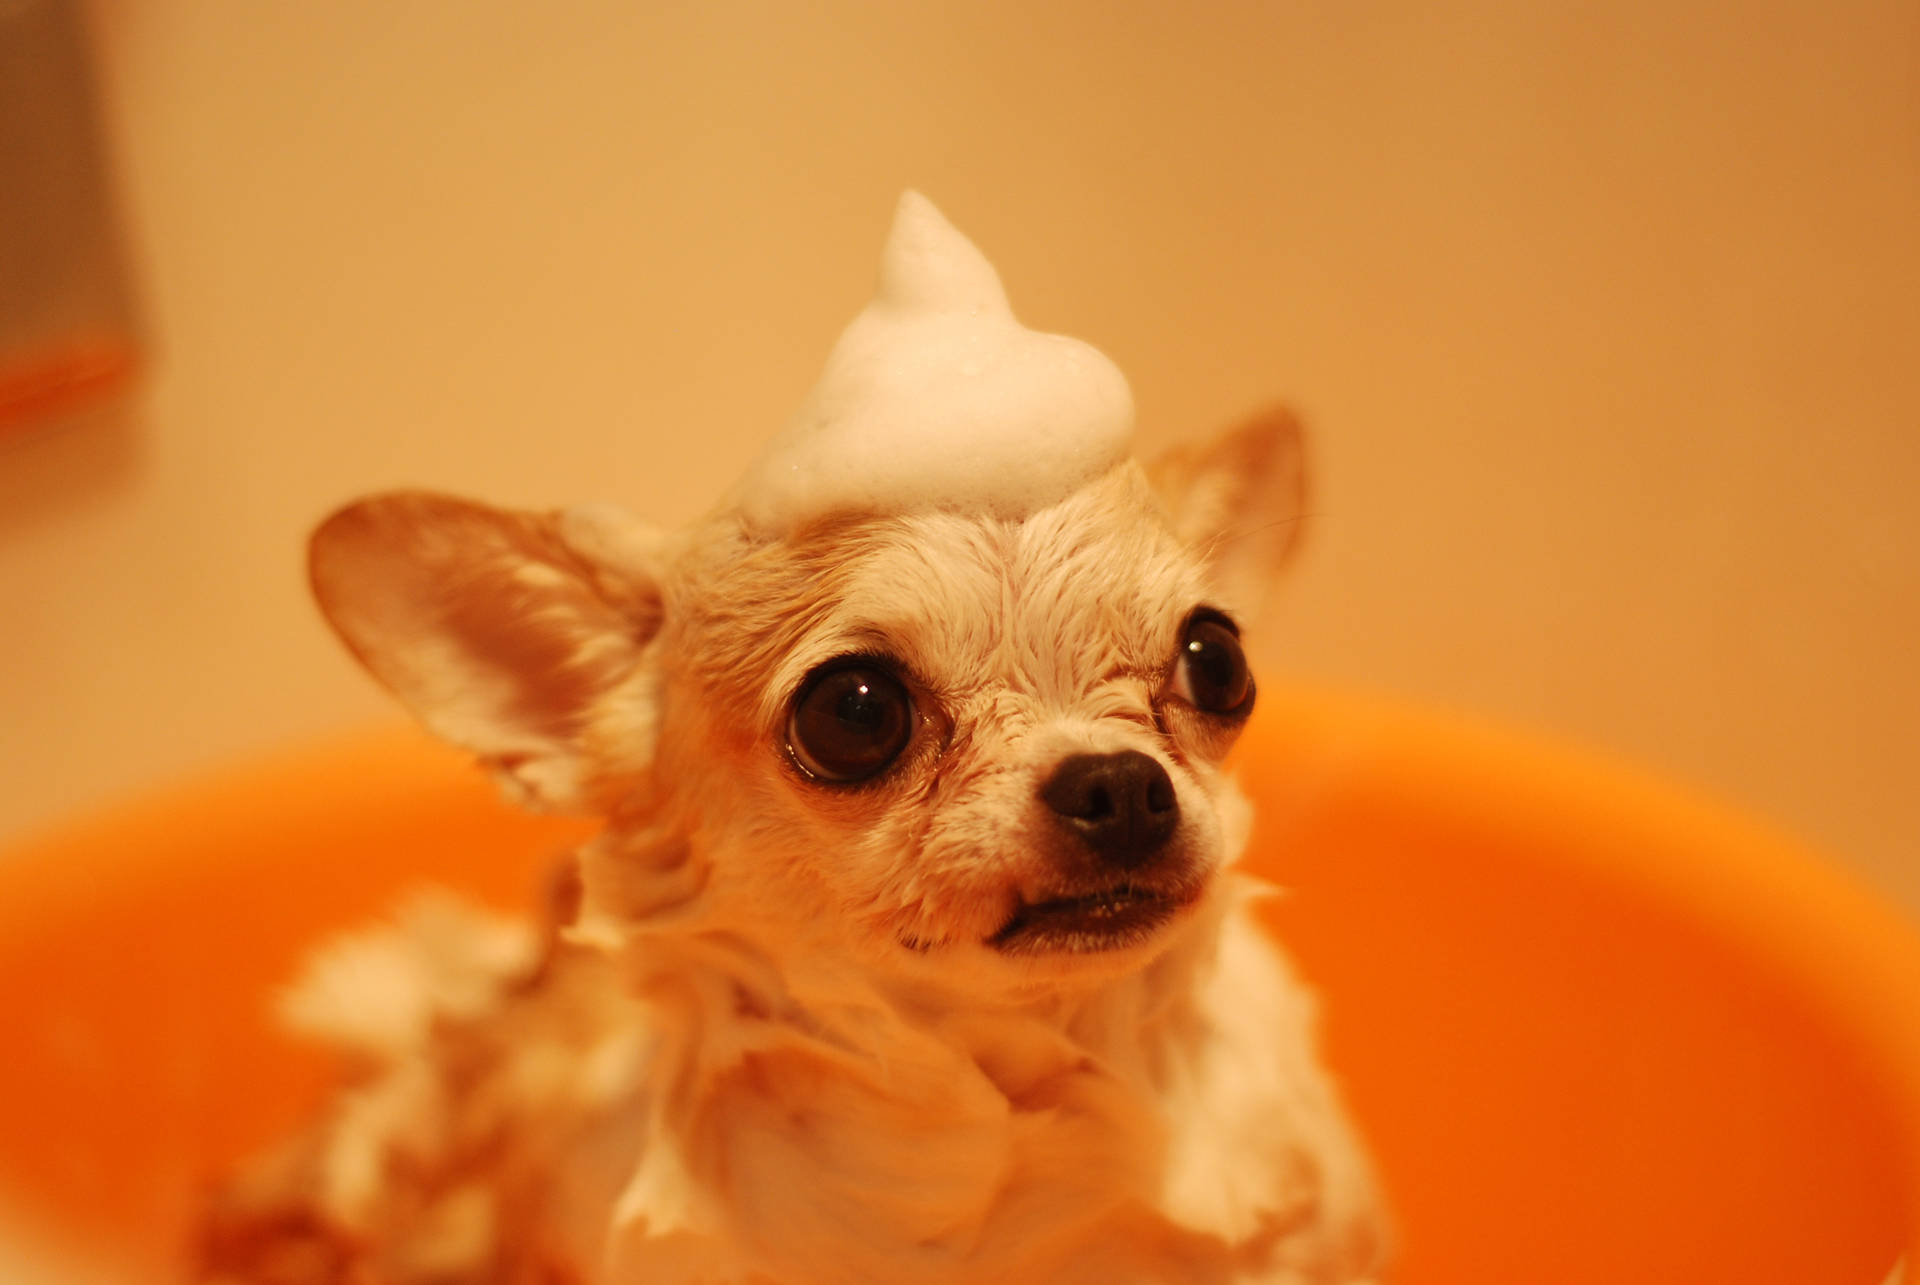 Cute Animal Chihuahua Taking A Bath Wallpaper